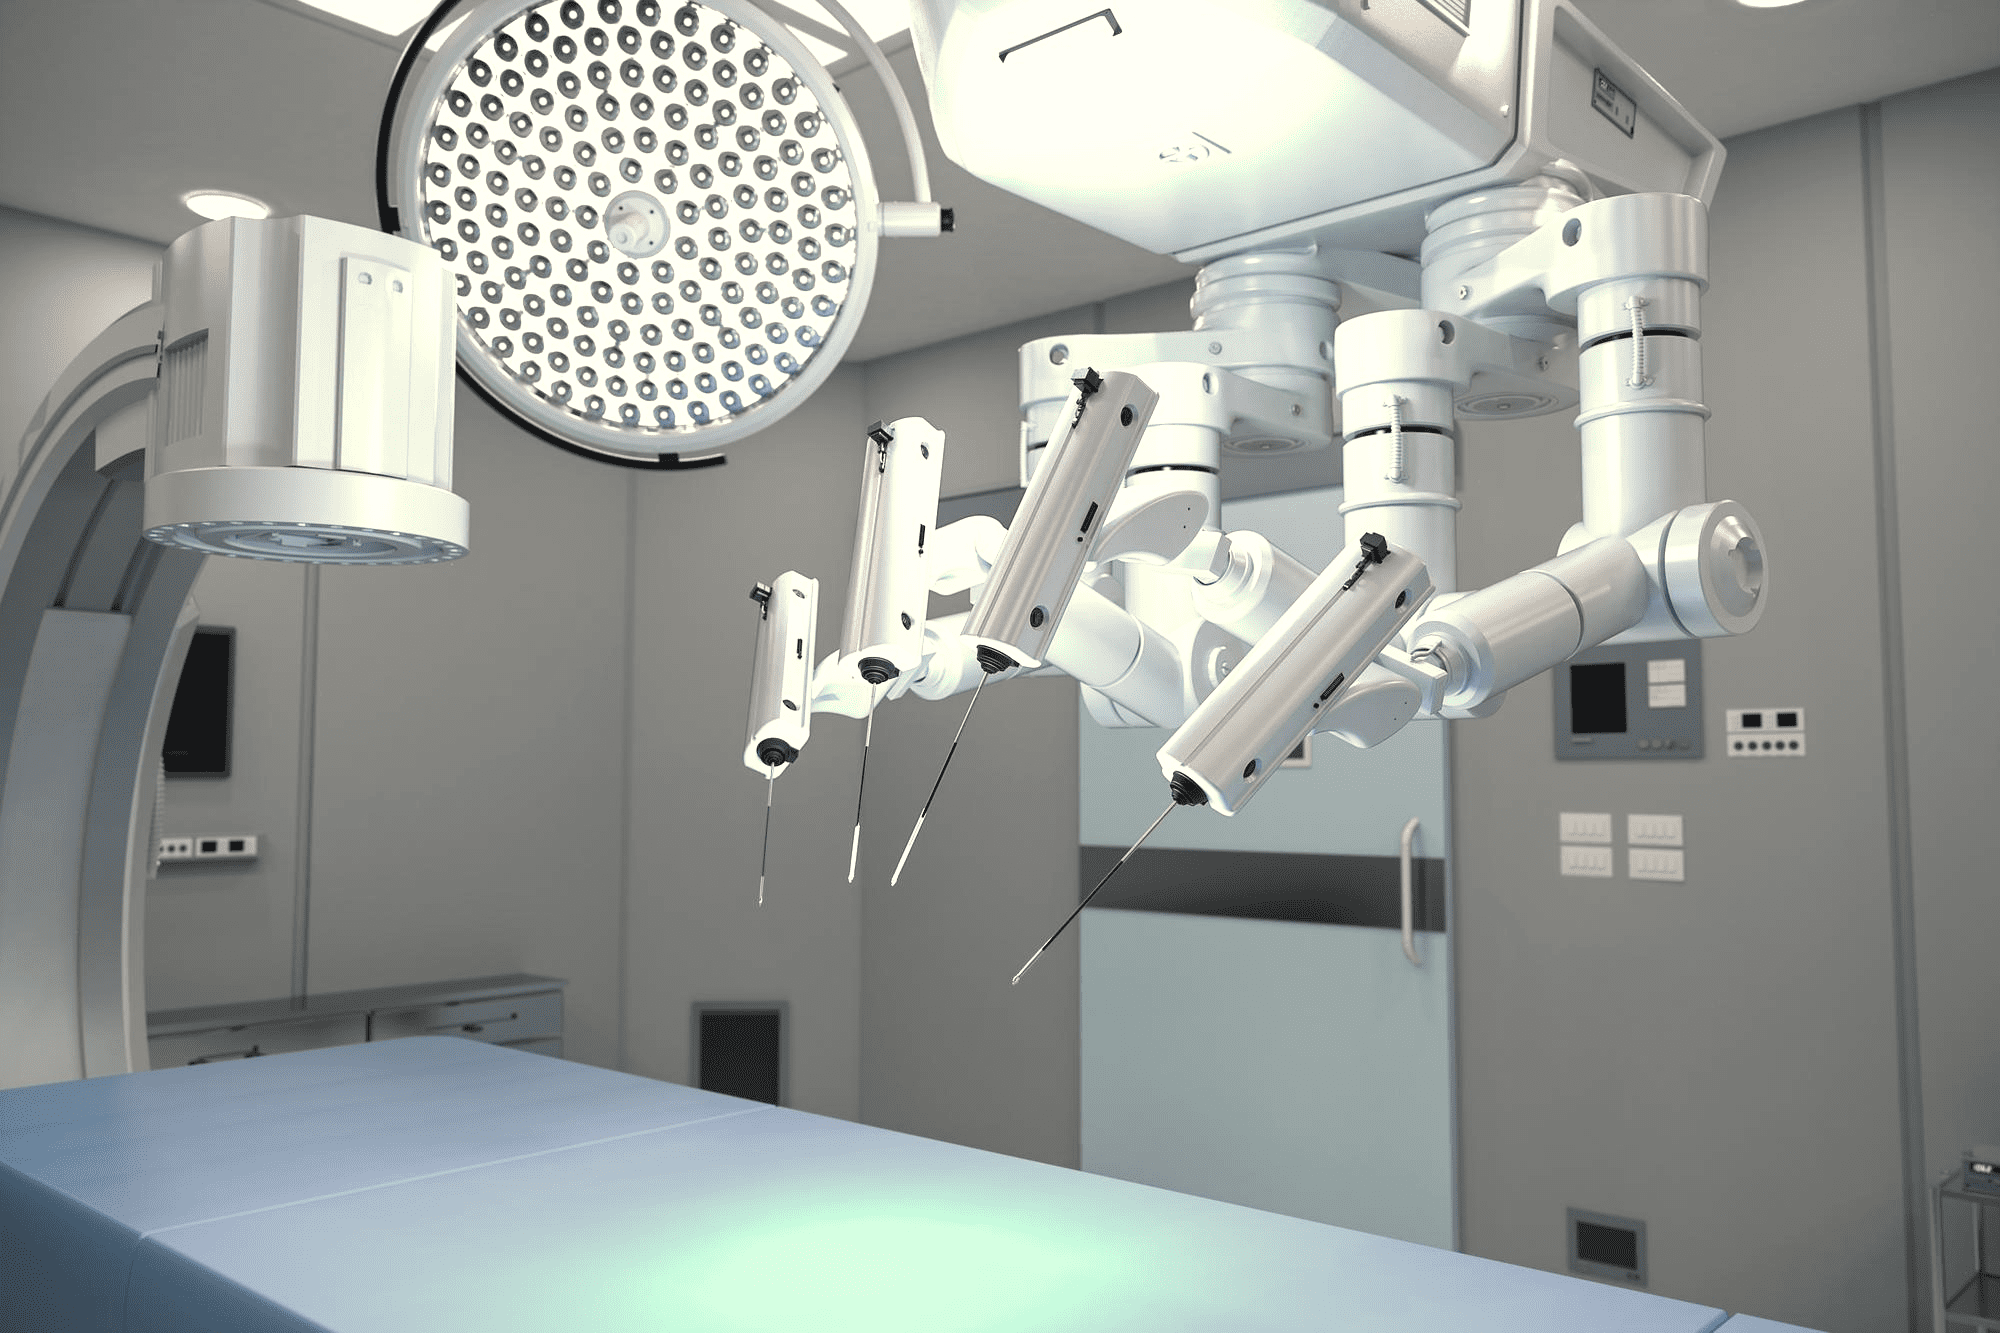 Como funciona a cirurgia robótica?